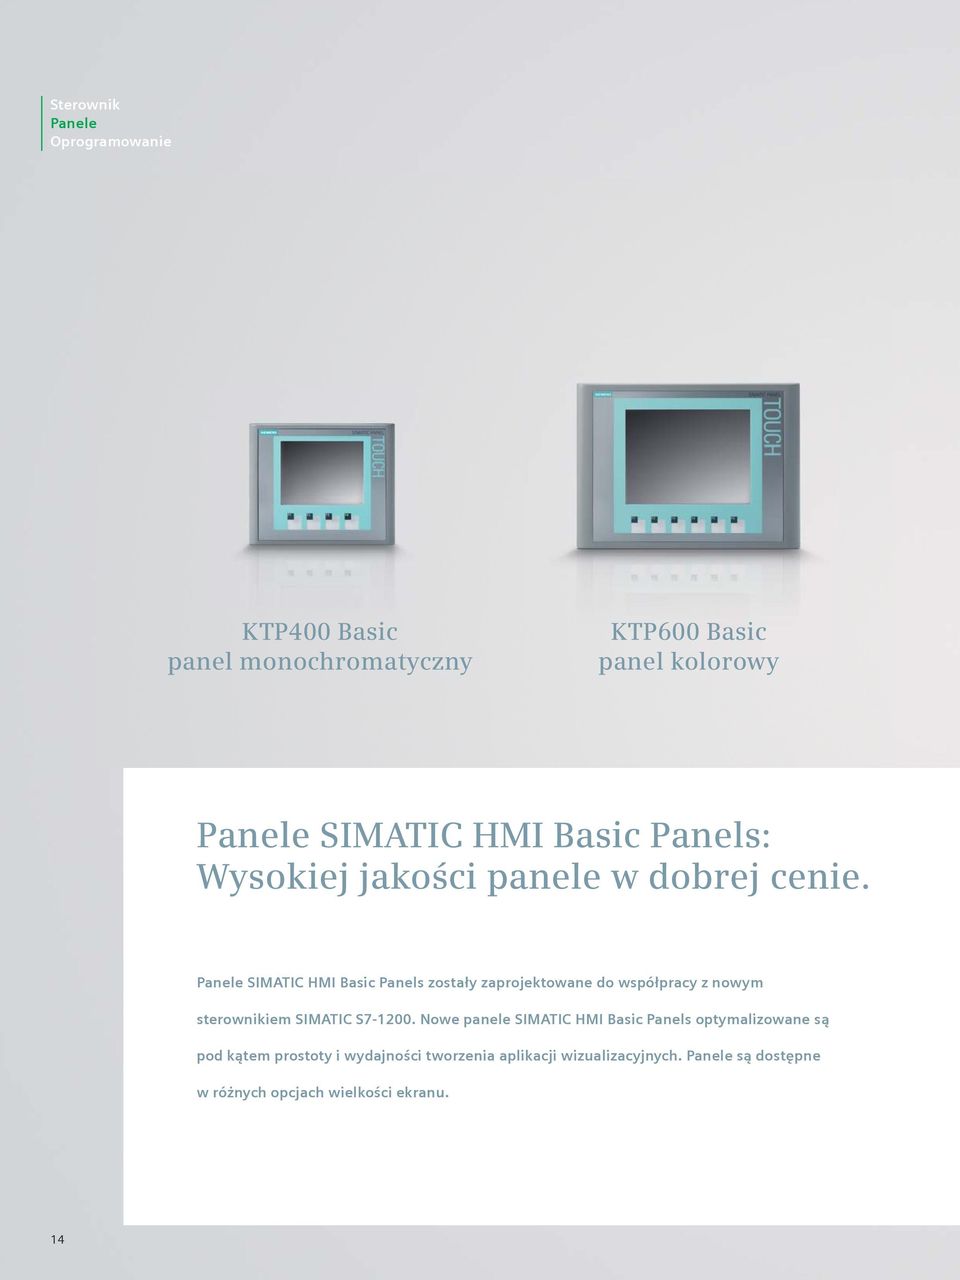 Panele SIMATIC HMI Basic Panels zostały zaprojektowane do współpracy z nowym sterownikiem SIMATIC S7-1200.